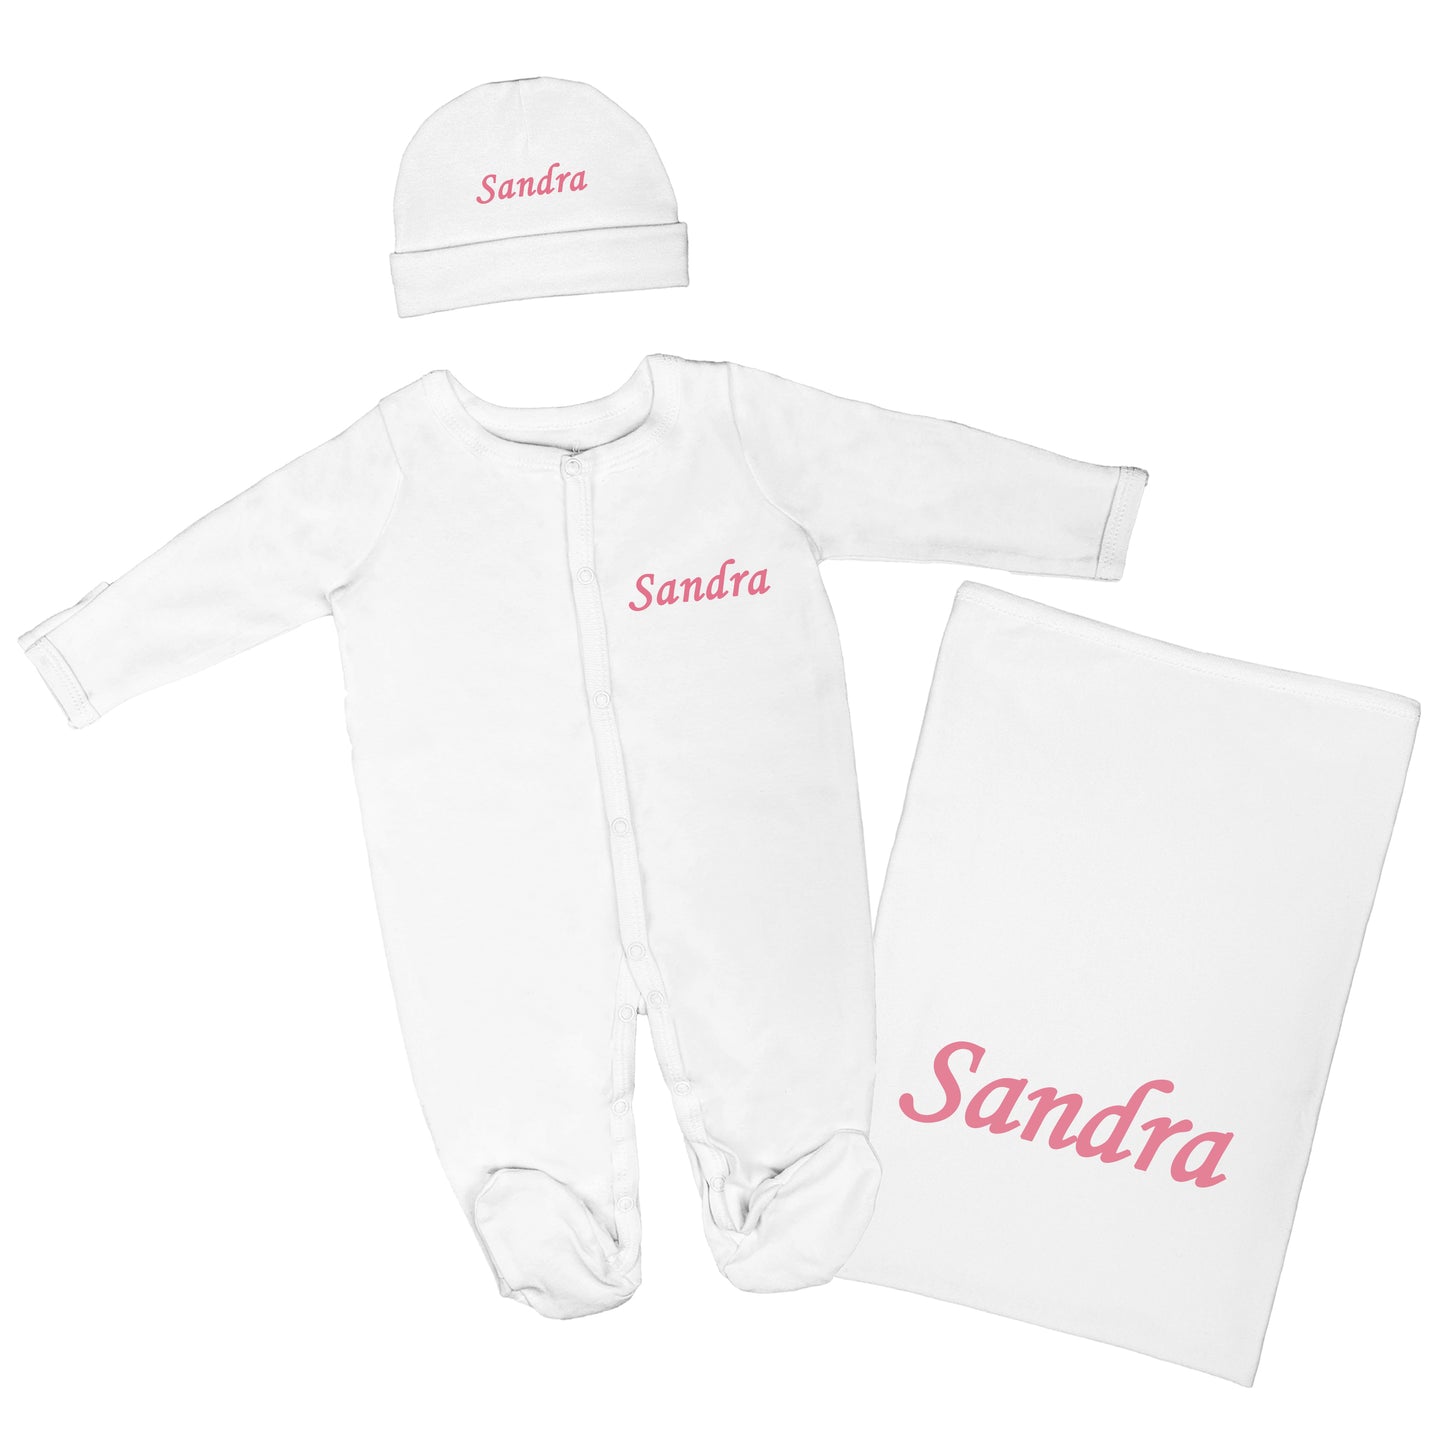 Personalized Baby Clothing Set (Blanket, Sleepsuit, Beanie) - English Name